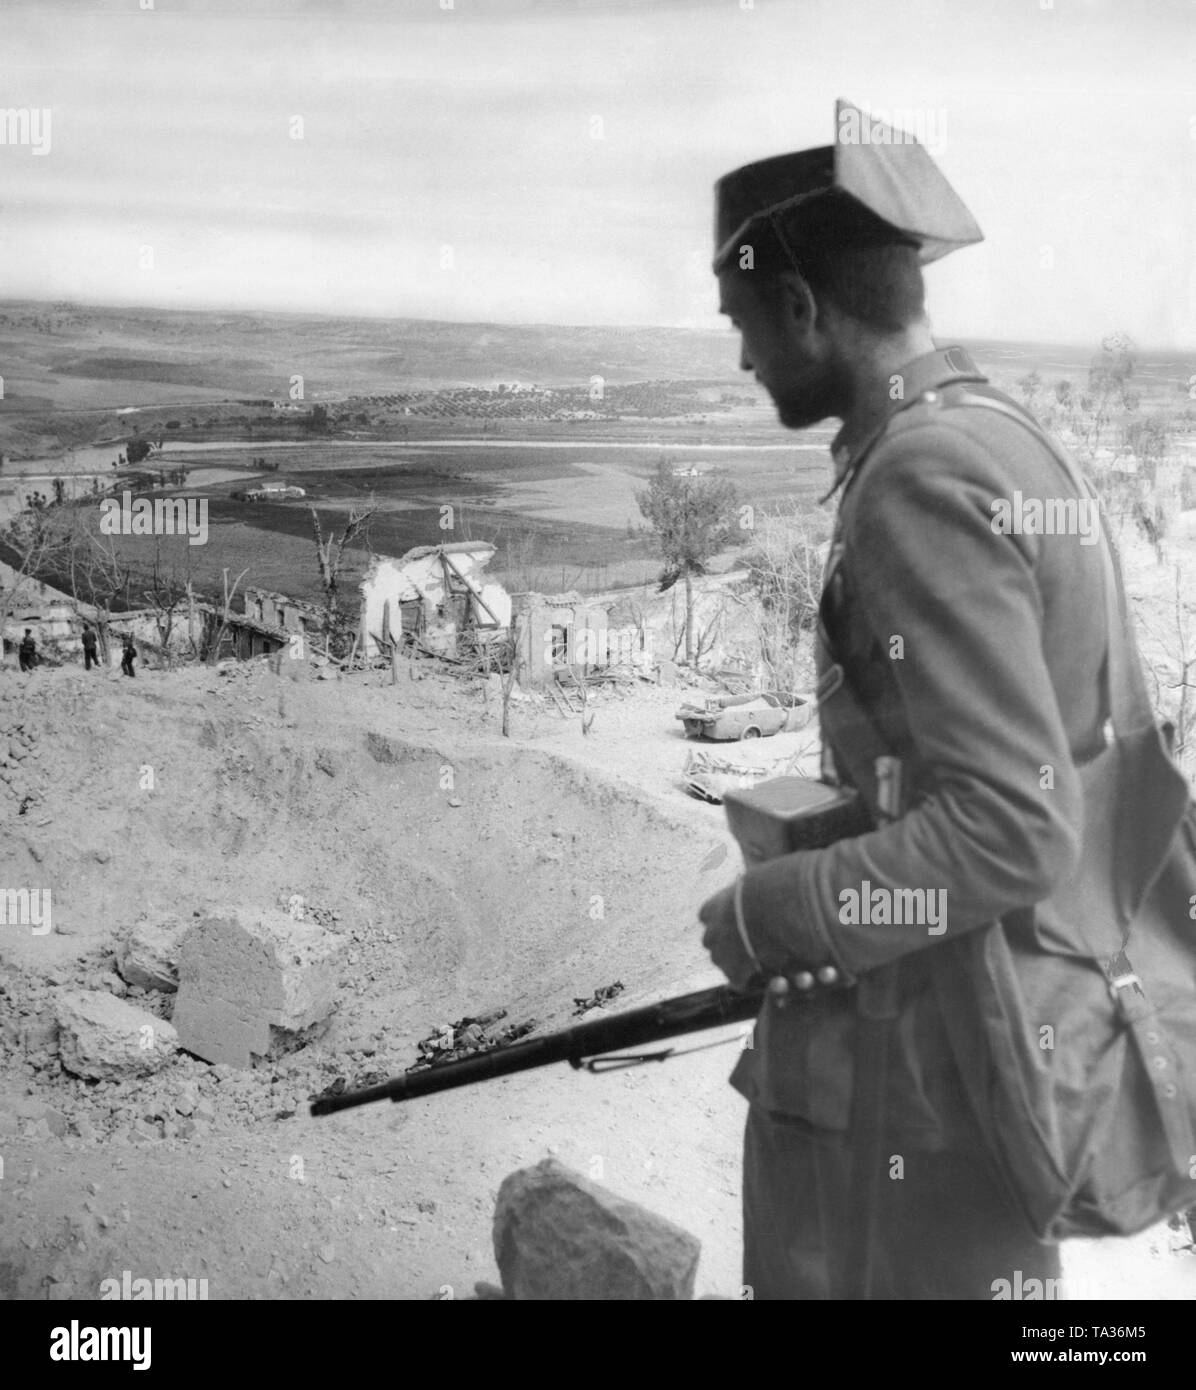 Foto der Guardia Civil Soldat (paramilitärische Polizeieinheit, die meist die französischen Truppen im Spanischen Bürgerkrieg verbunden), blickt zurück auf den Ruinen der Alcazar von Toledo (Toledo Festung). Im Hintergrund, die Landschaft. In der Mitte, Soldaten sind durch die Shell Krater. Stockfoto